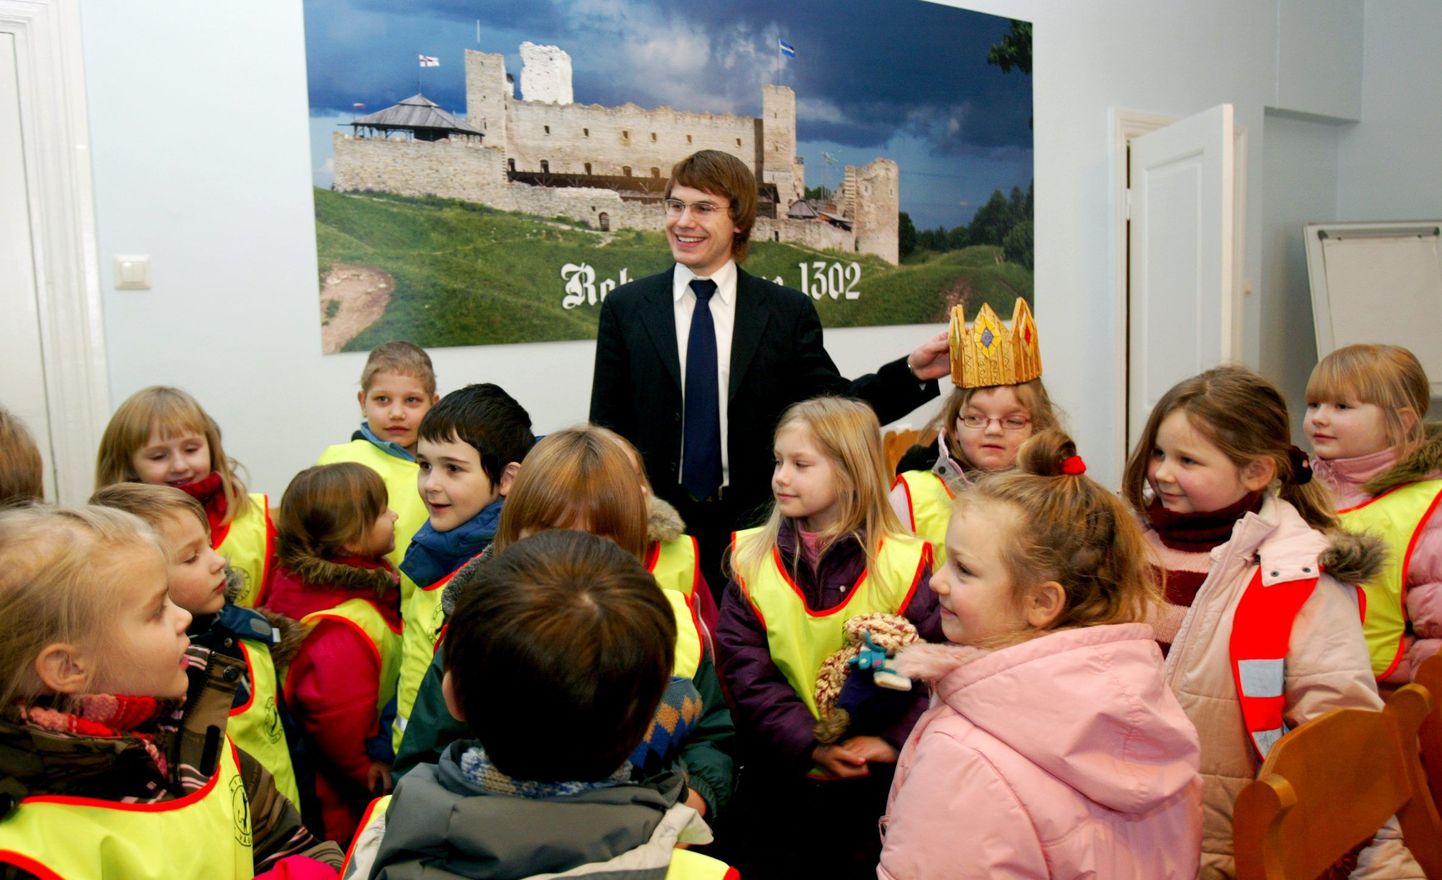 Eile käisid alates sellest kuust 6000 krooni vähem teenival Rannar Vassiljevil külas Rakvere linna algkooli lasteaialapsed, kes kinkisid linnapeale kuldse krooni. Pisipõnnidel jätkus linnavalitsuses uudistamist küllaga.